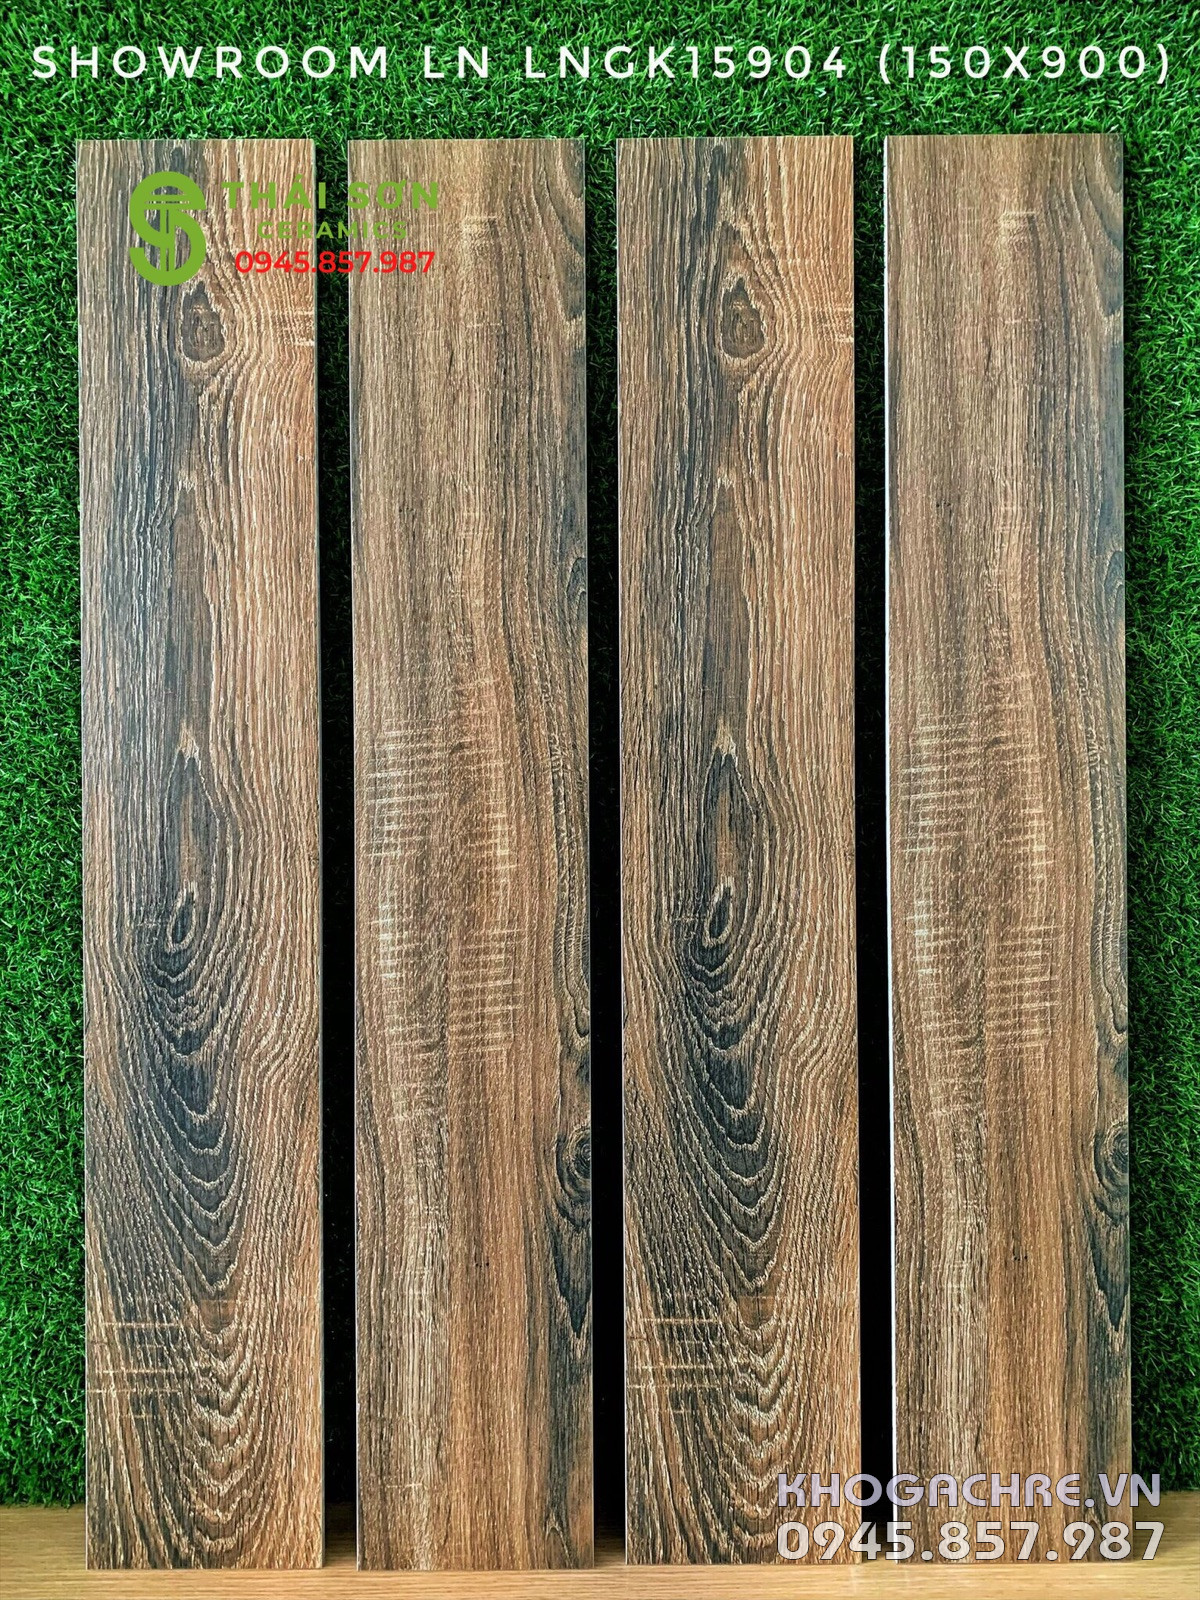 Gạch vân gỗ 15x90 viglacera cao cấp